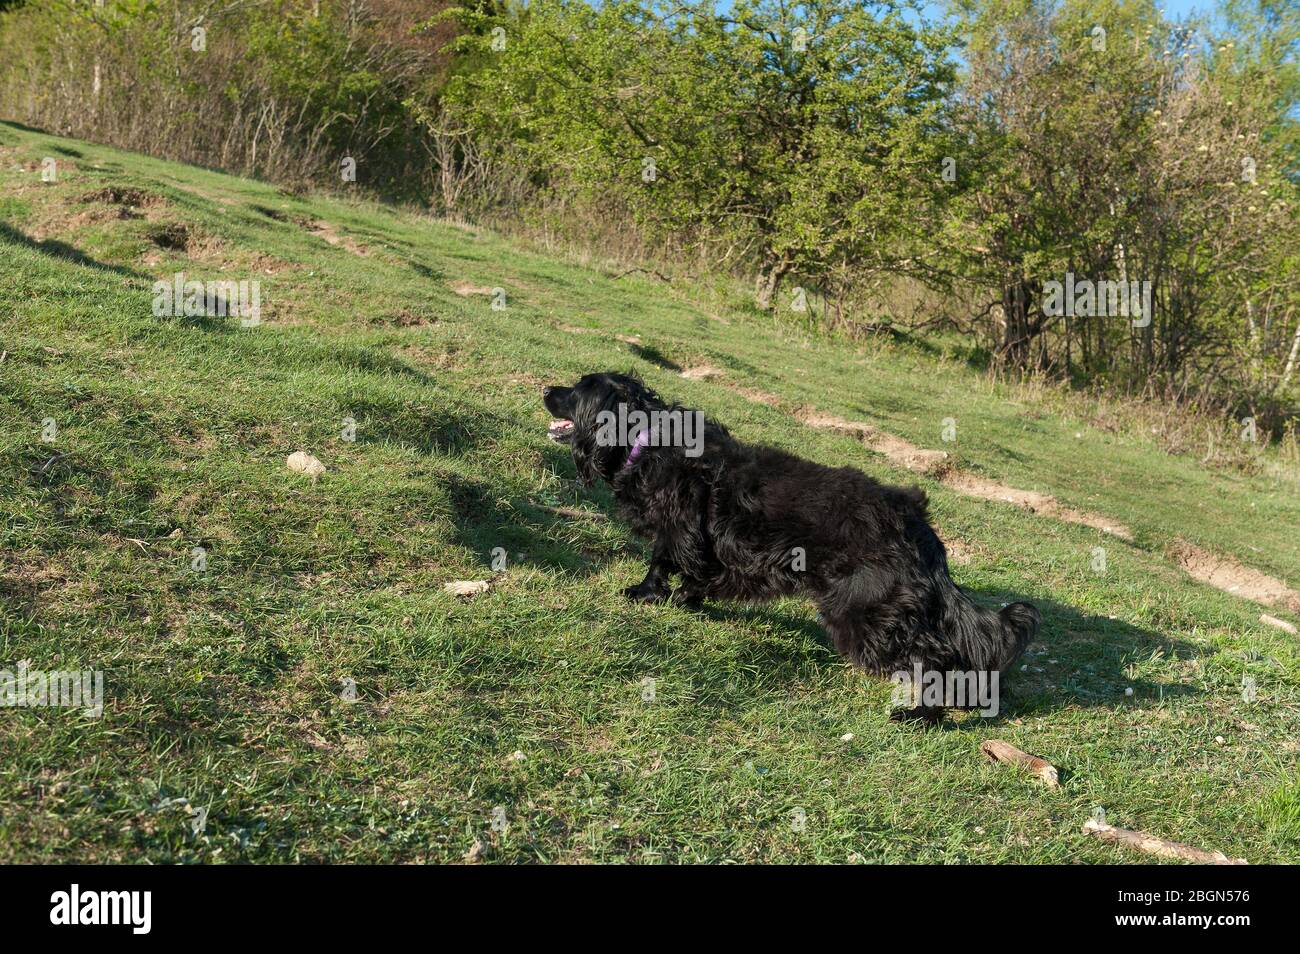 Verspielter Waffenhund ein schwarzer Cocker Spaniel tentativey wartet auf einen weiteren Stock, der auf einen Kreidegraslandhang geworfen wird Stockfoto